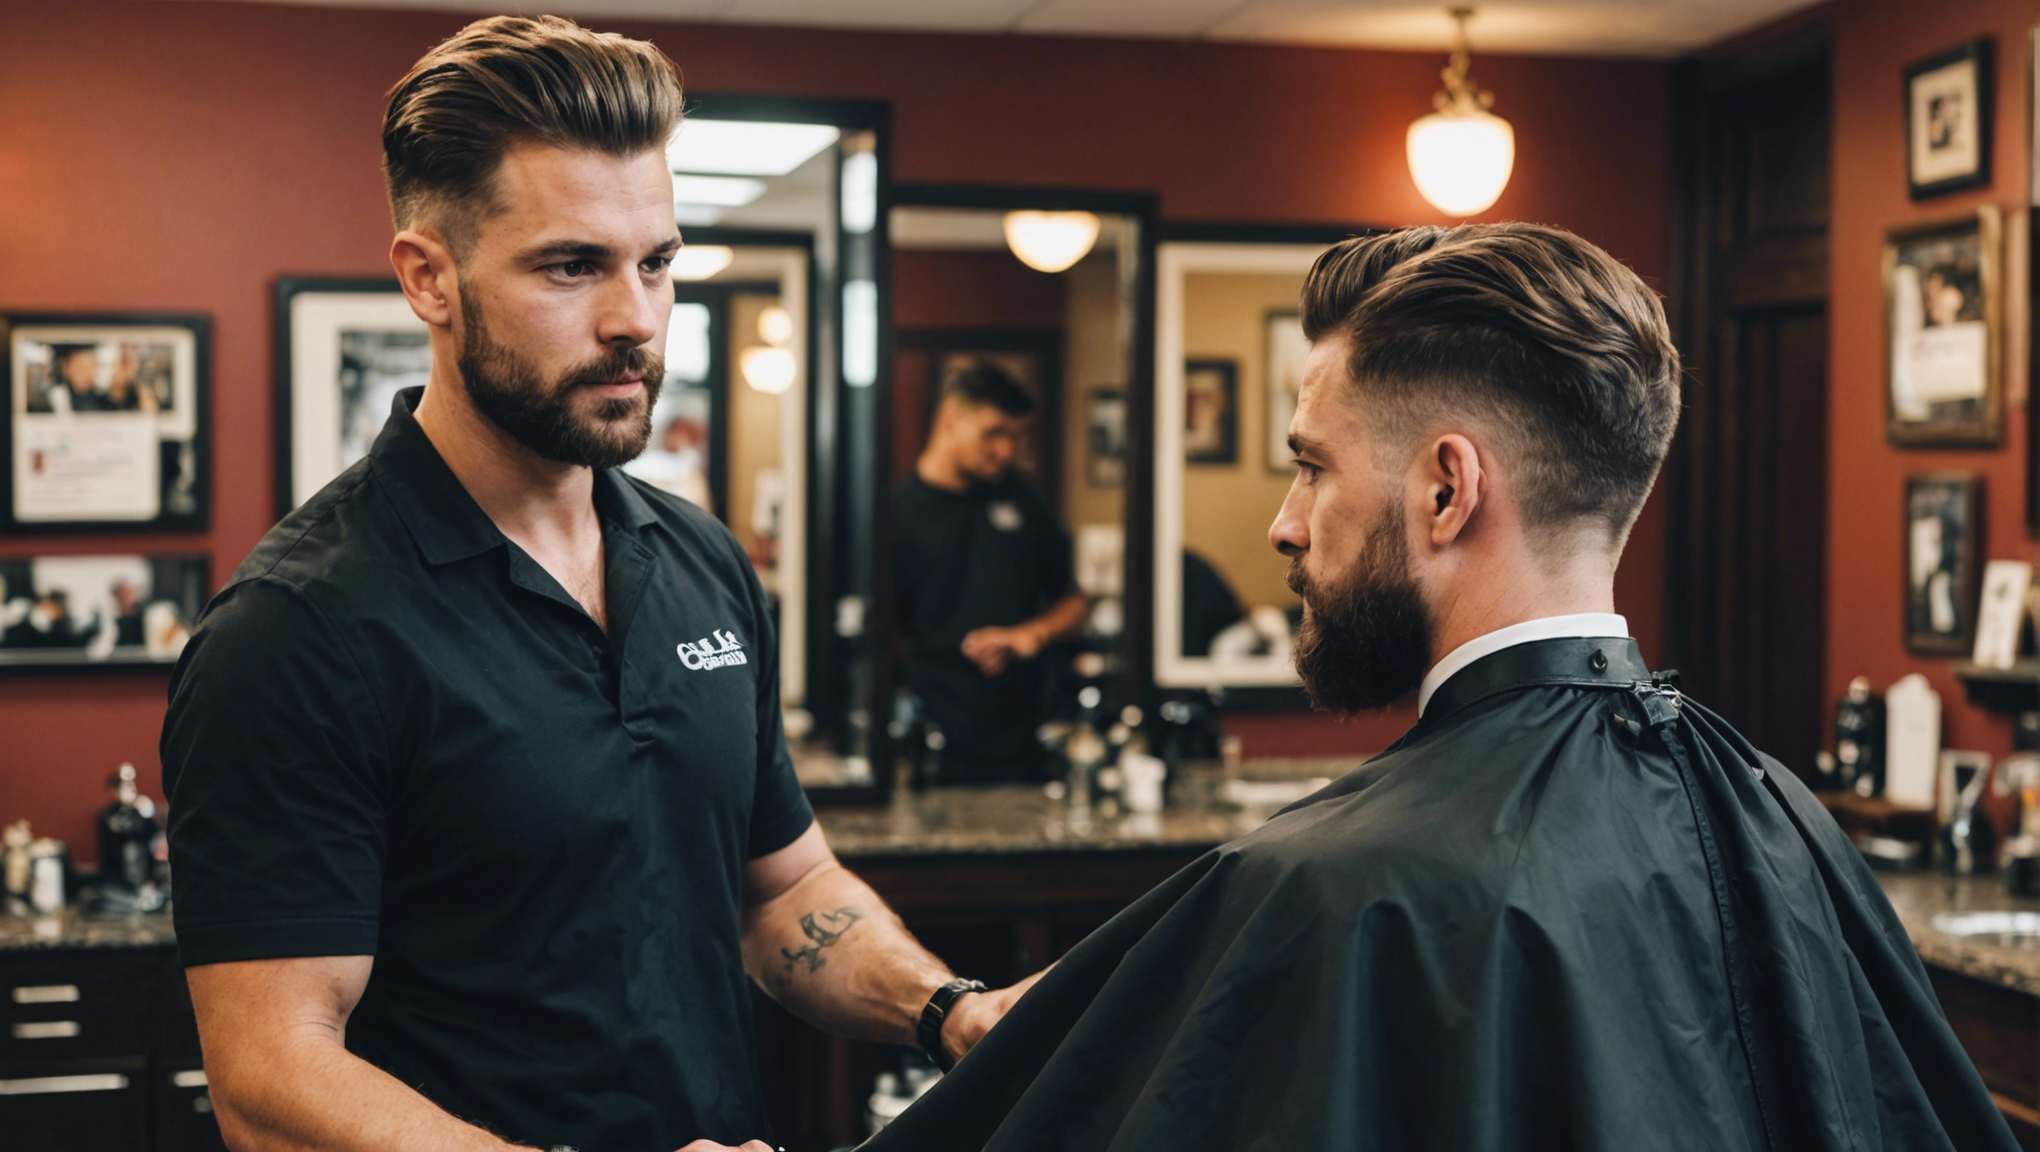 découvrez où trouver la meilleure coiffure pour homme à orléans avec notre guide des salons de coiffure et des tendances capillaires pour hommes.